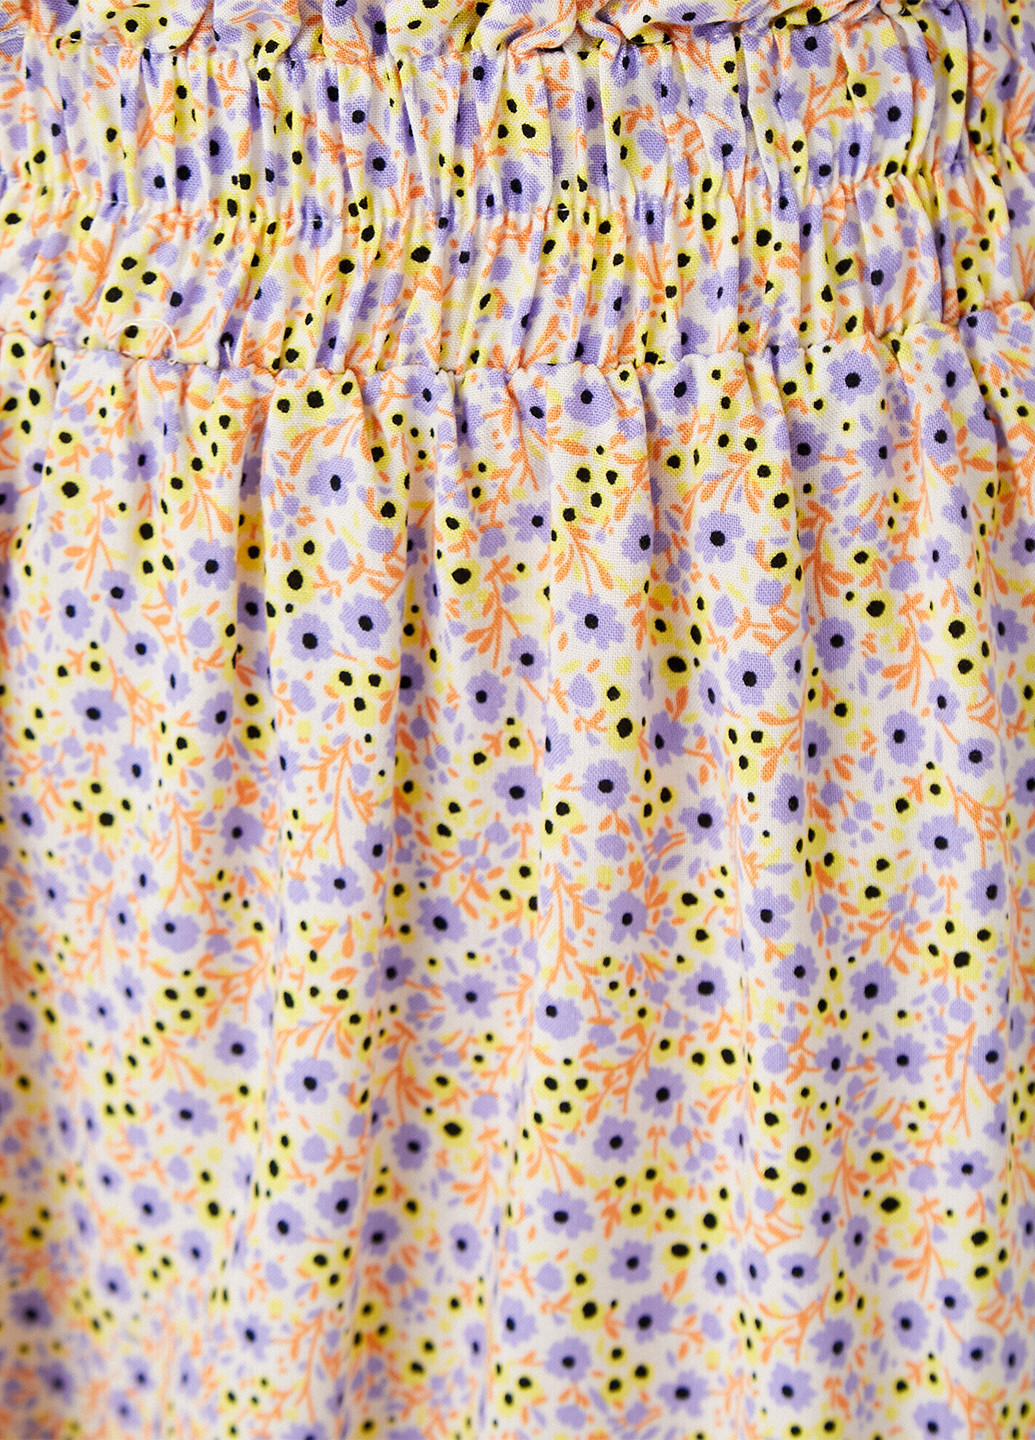 Желтая кэжуал юбка KOTON а-силуэта (трапеция)